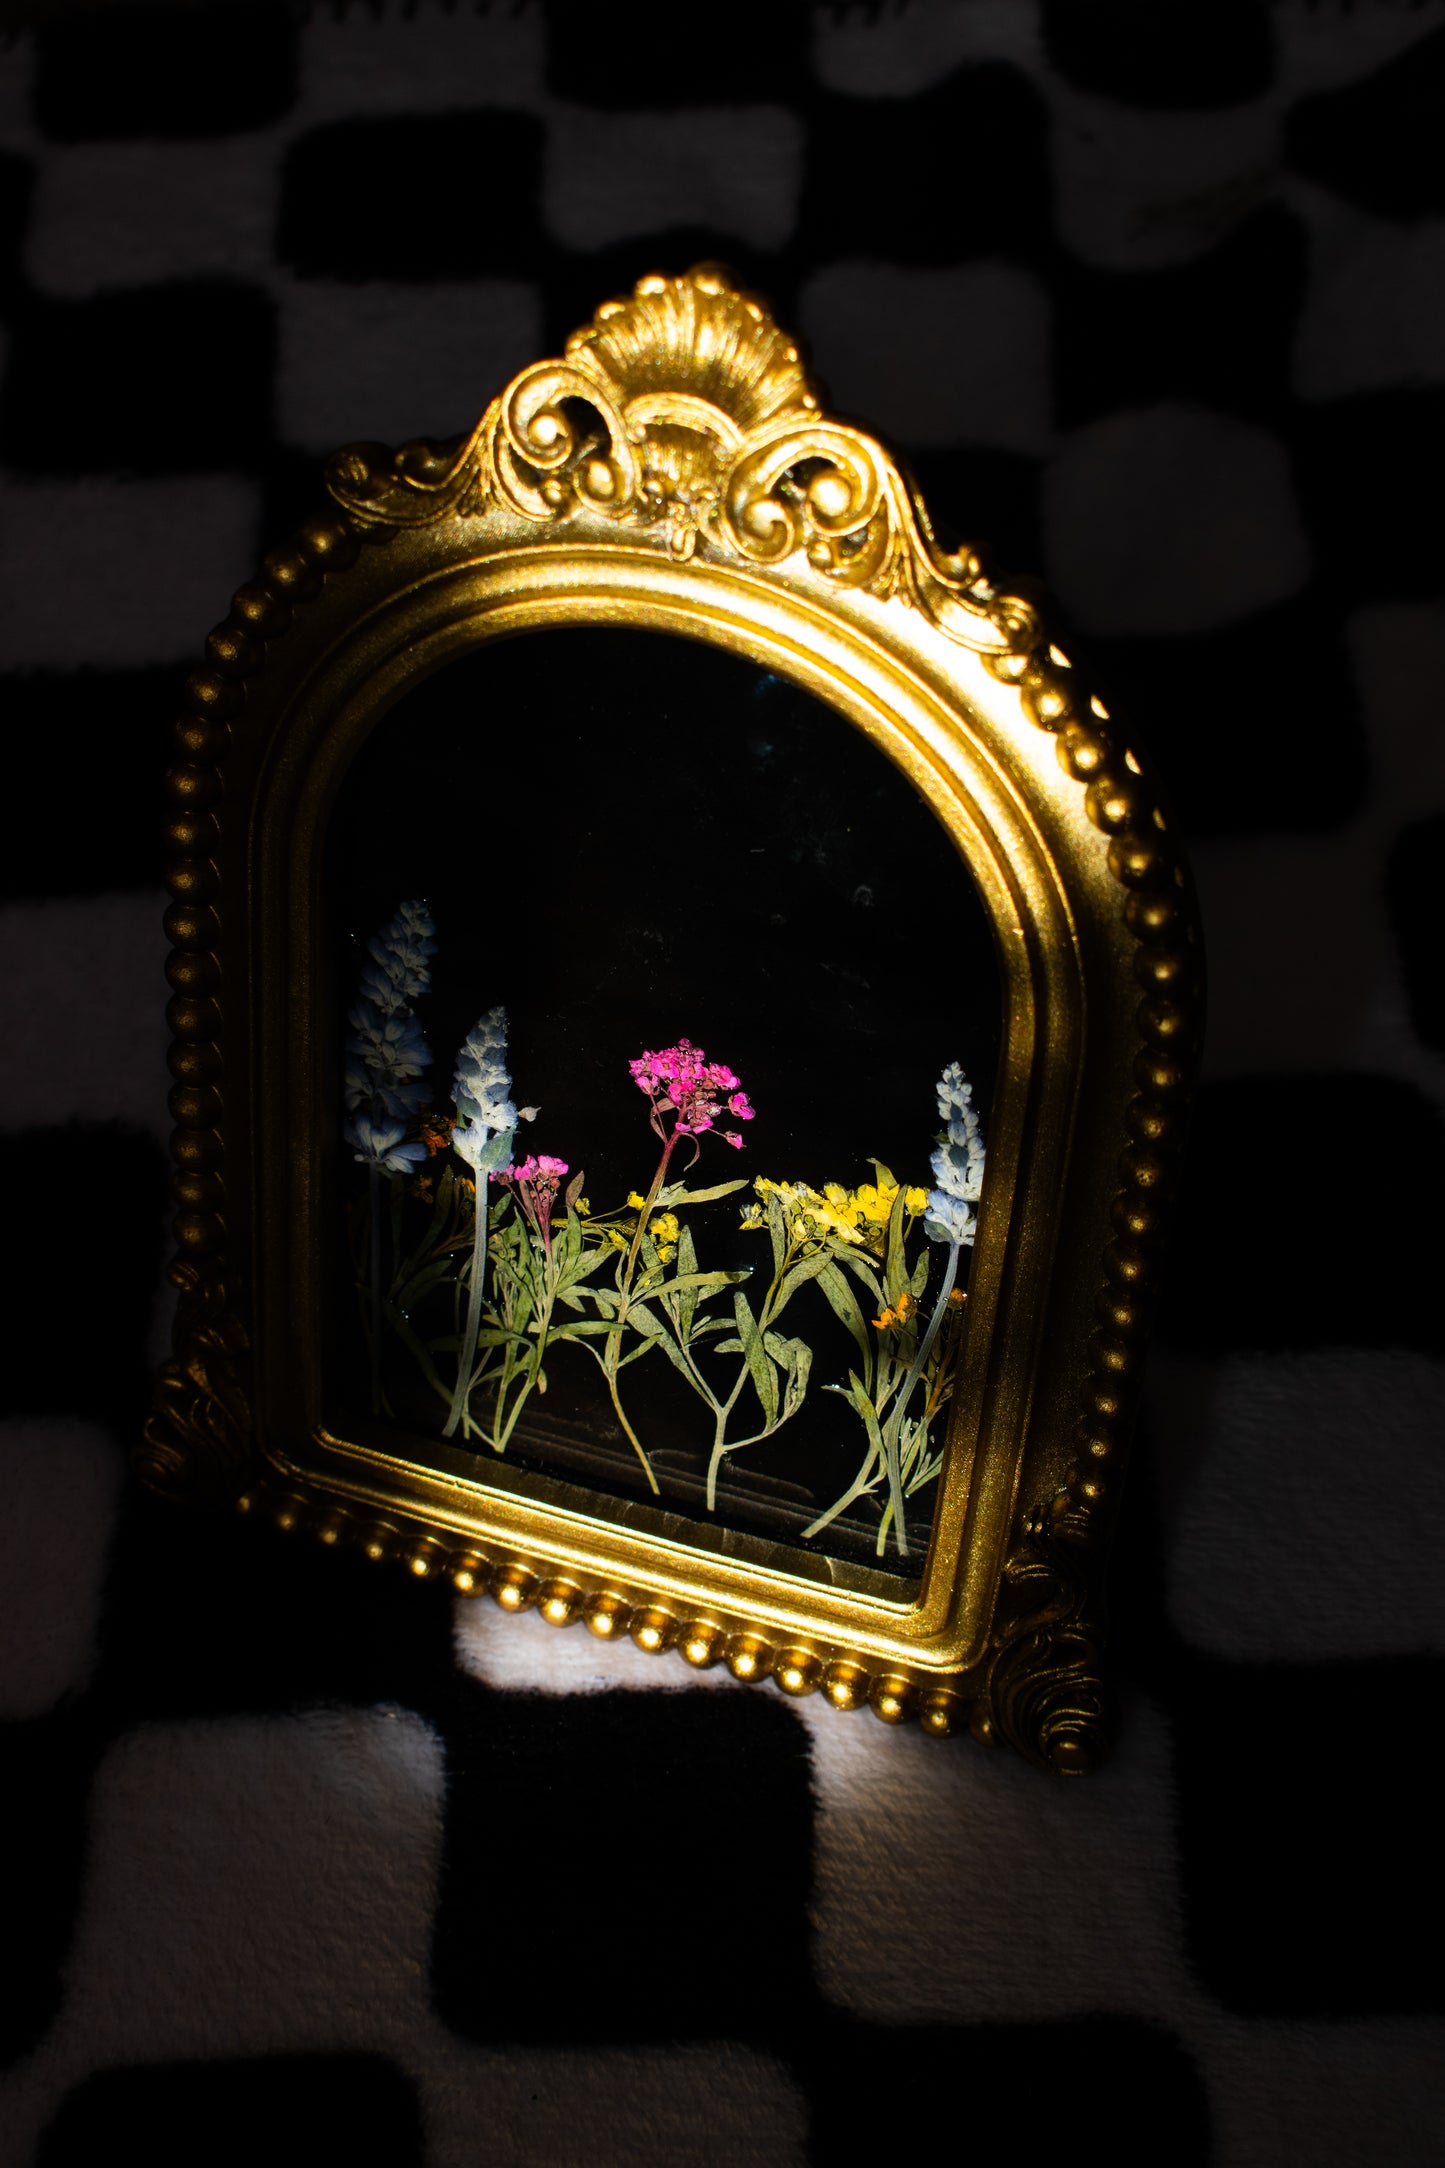 Vintage Flower Frame